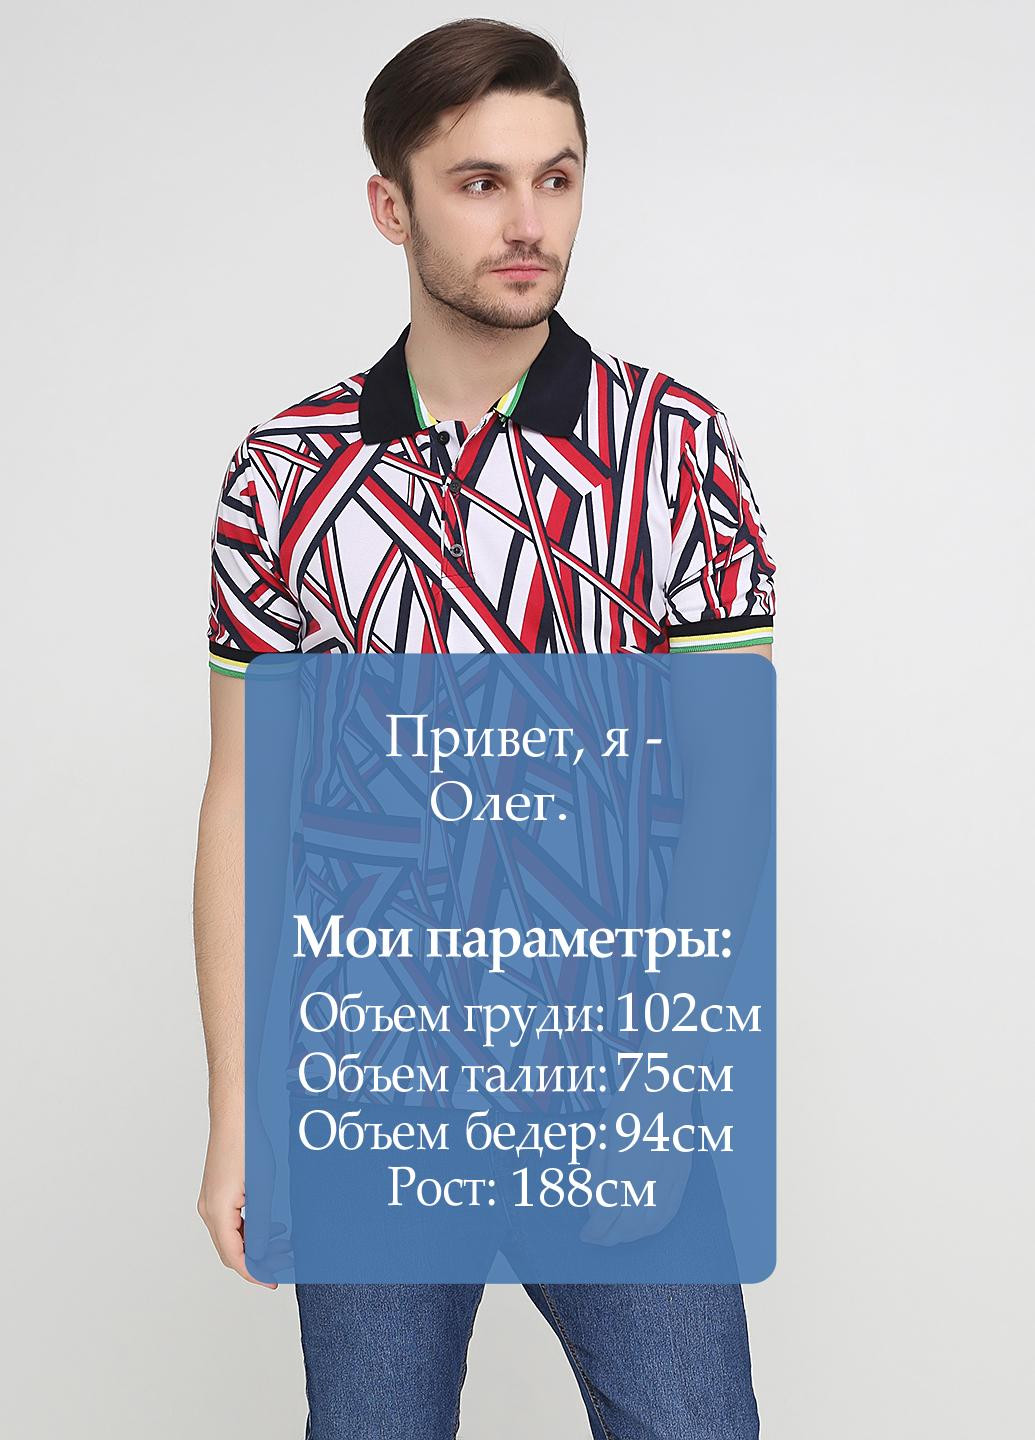 Цветная футболка-поло для мужчин Chiarotex с геометрическим узором